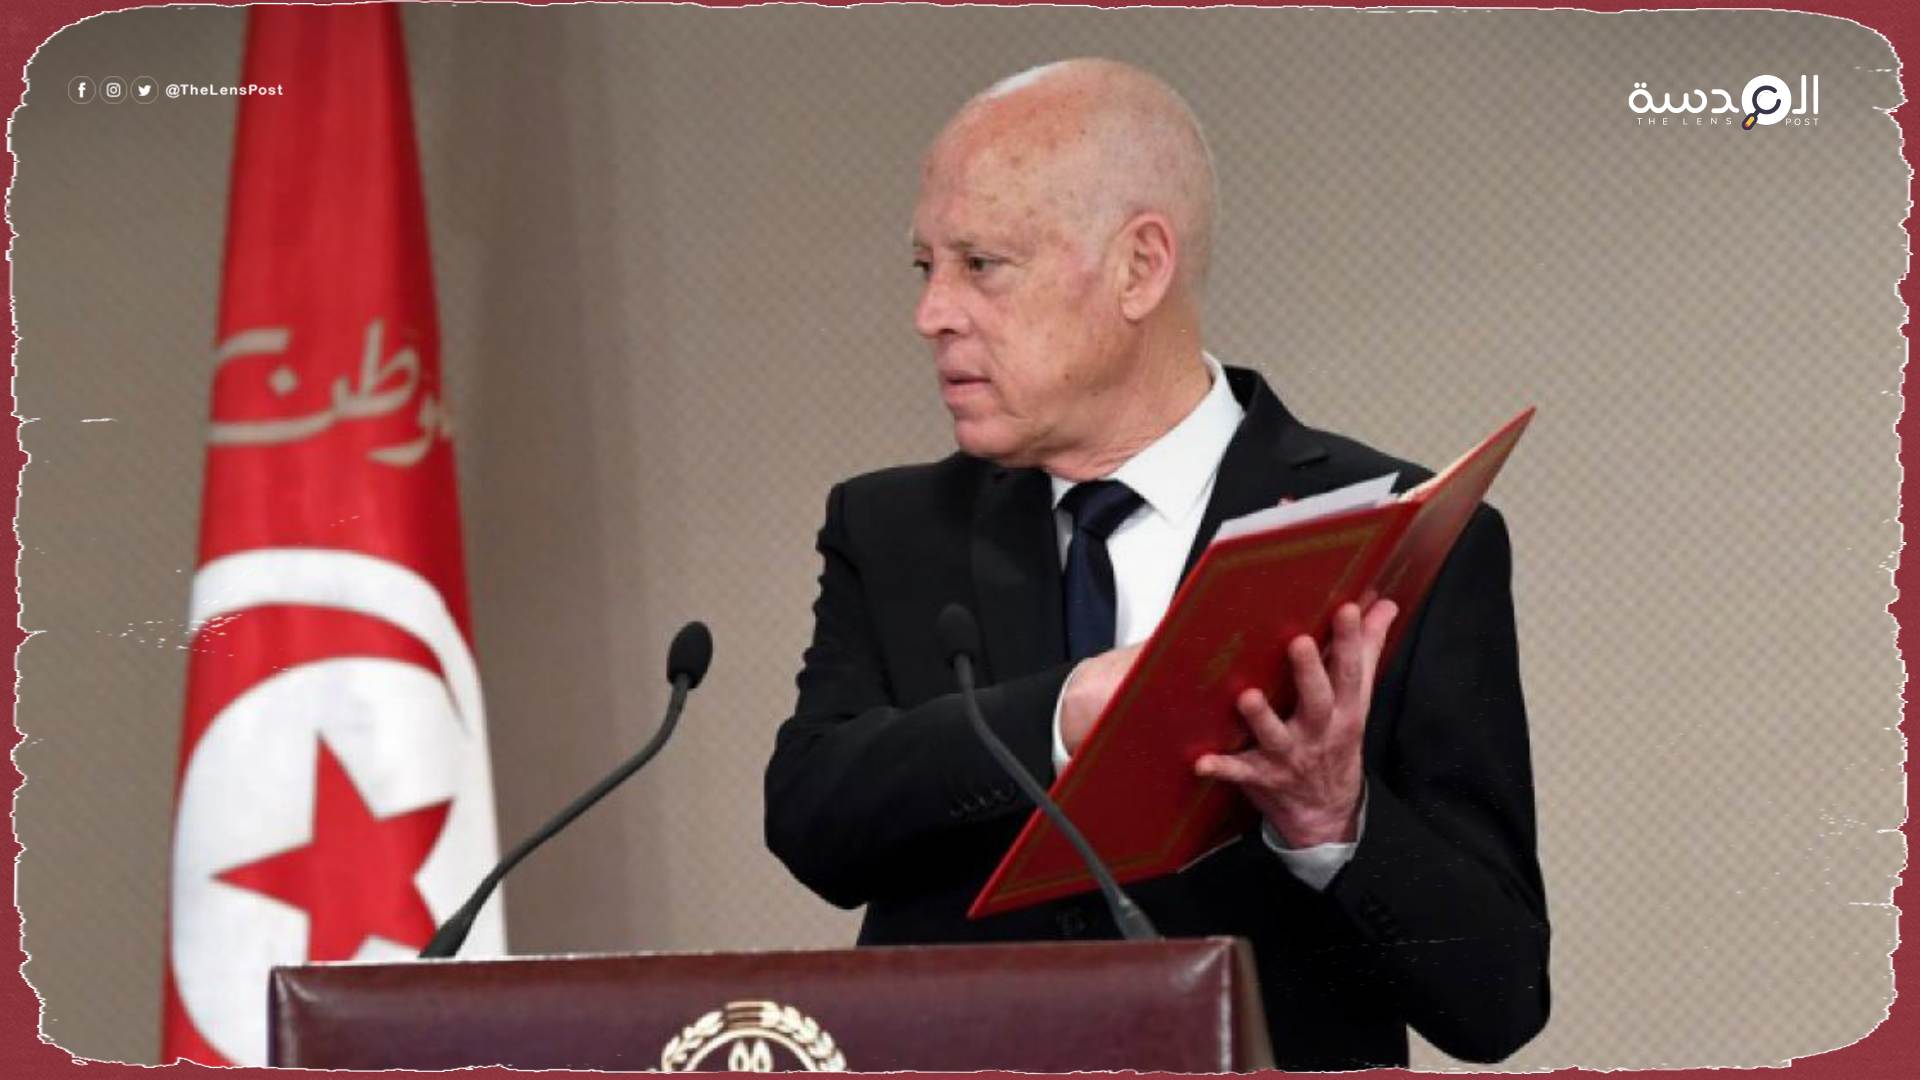  عن الدستور التونسي الجديد.. النهضة: فاقد للشرعية